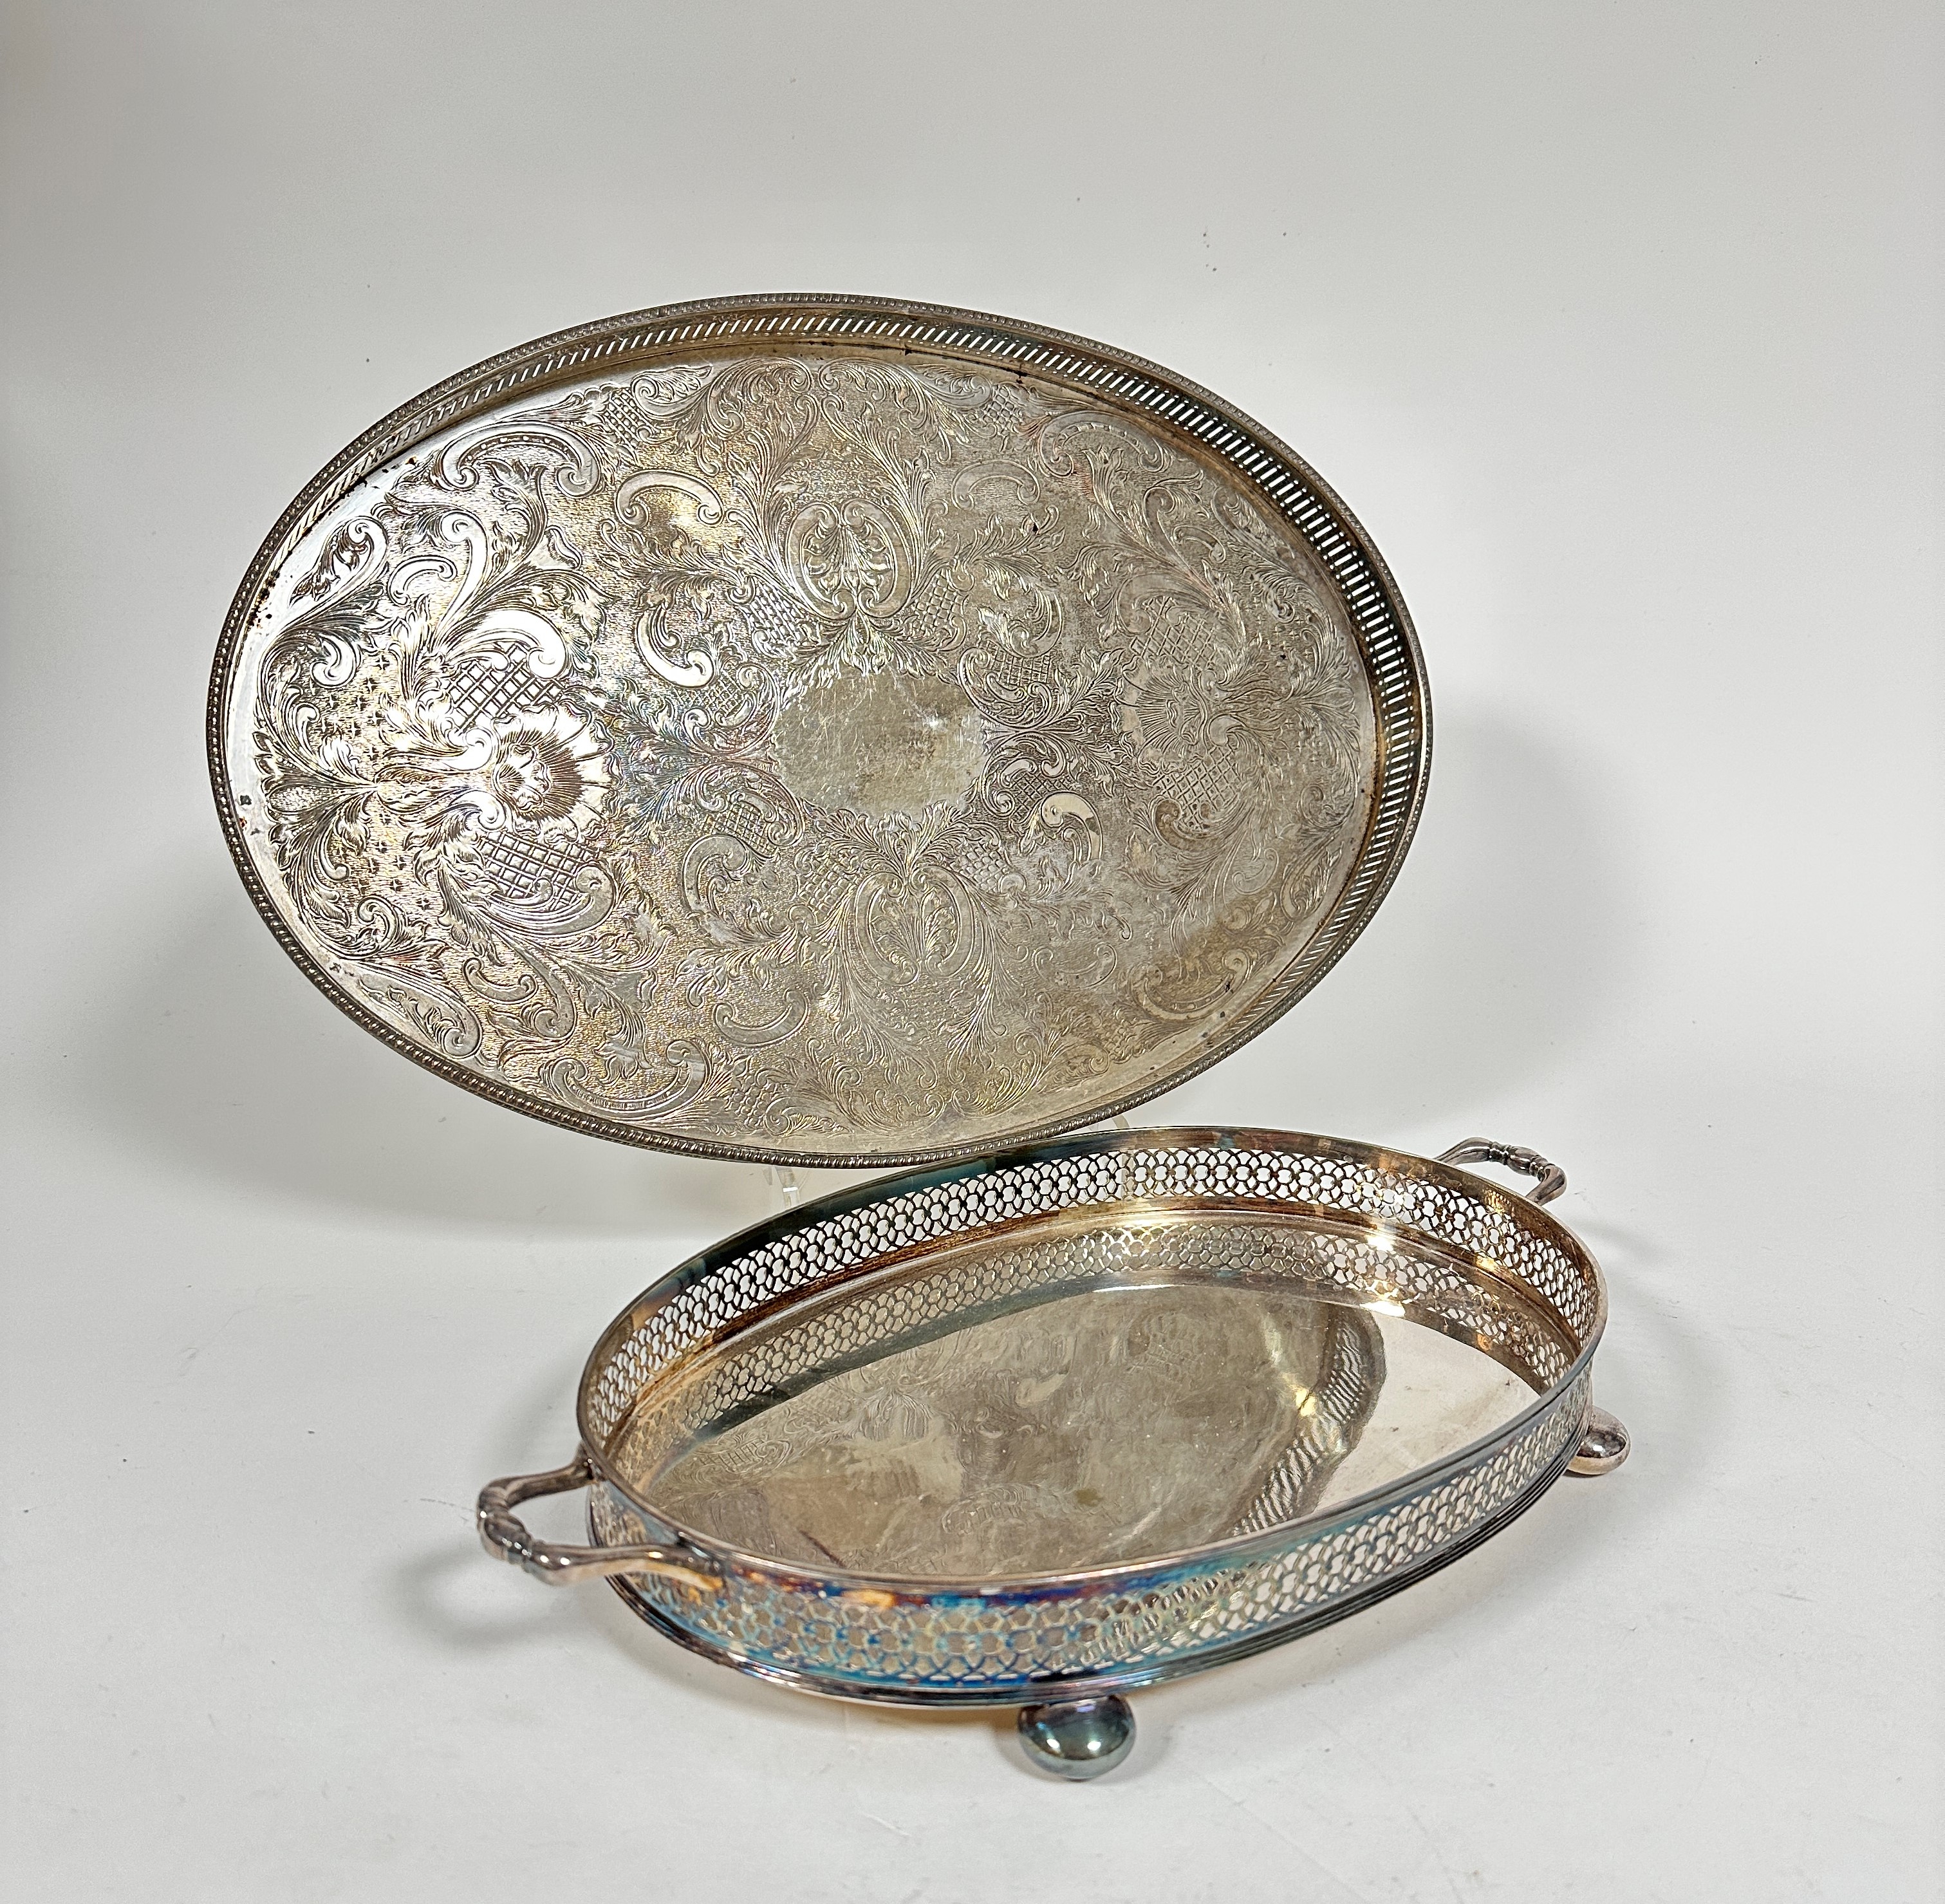 An Epns two handled pierced galleried tray raised on bun feet, (h 5cm x 32cm x 22cm) and an Epns